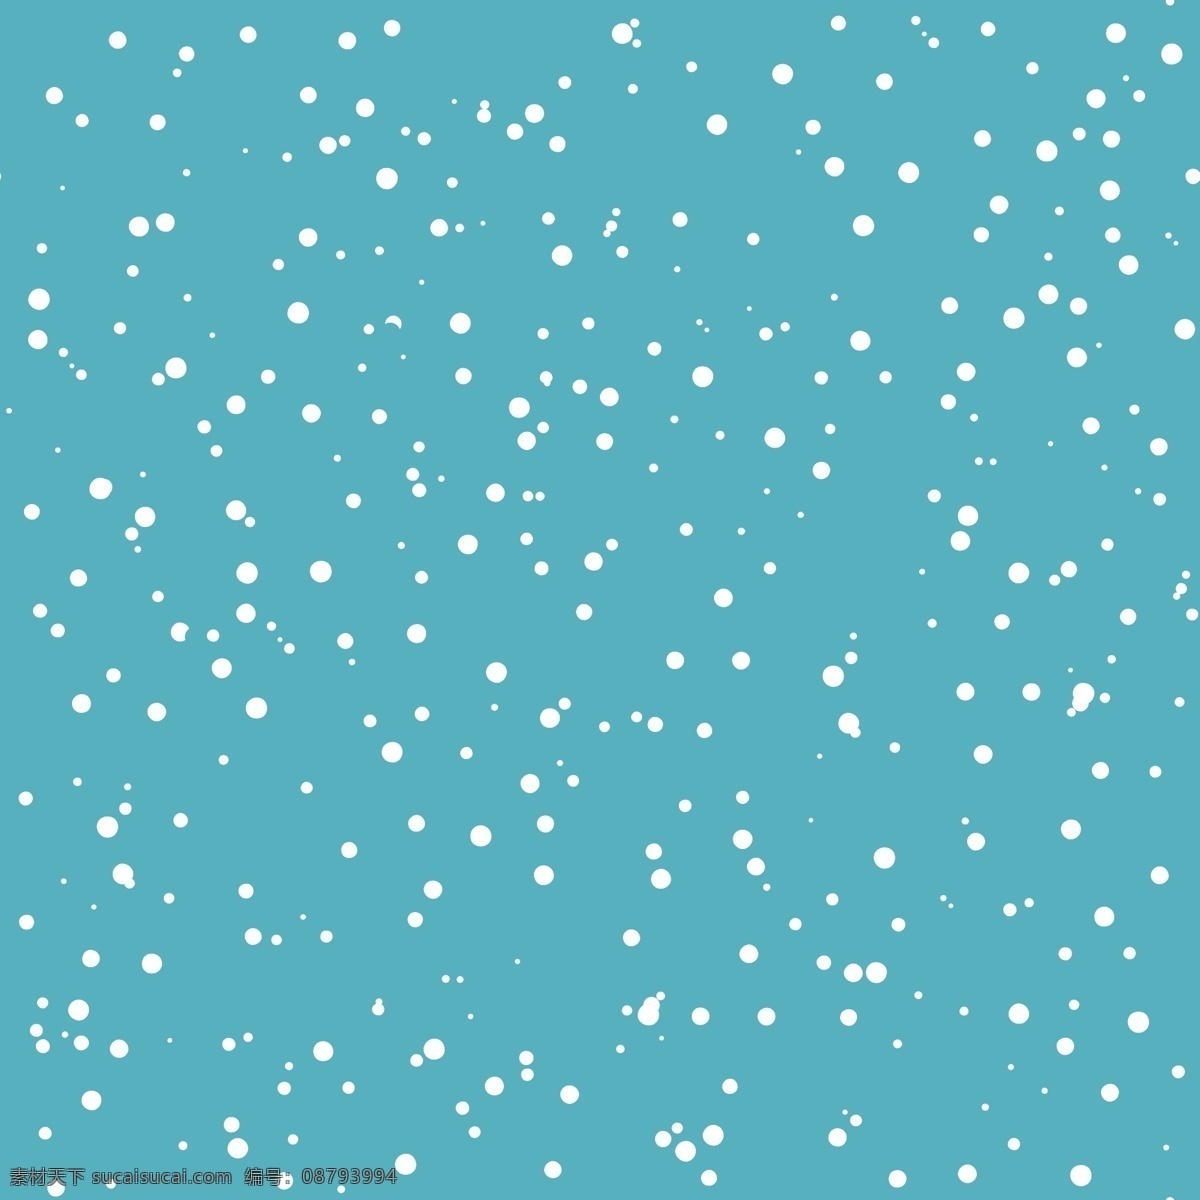 星星 圣诞 卡通 矢量 合集 蓝色 可爱 矢量素材 简约 平面素材